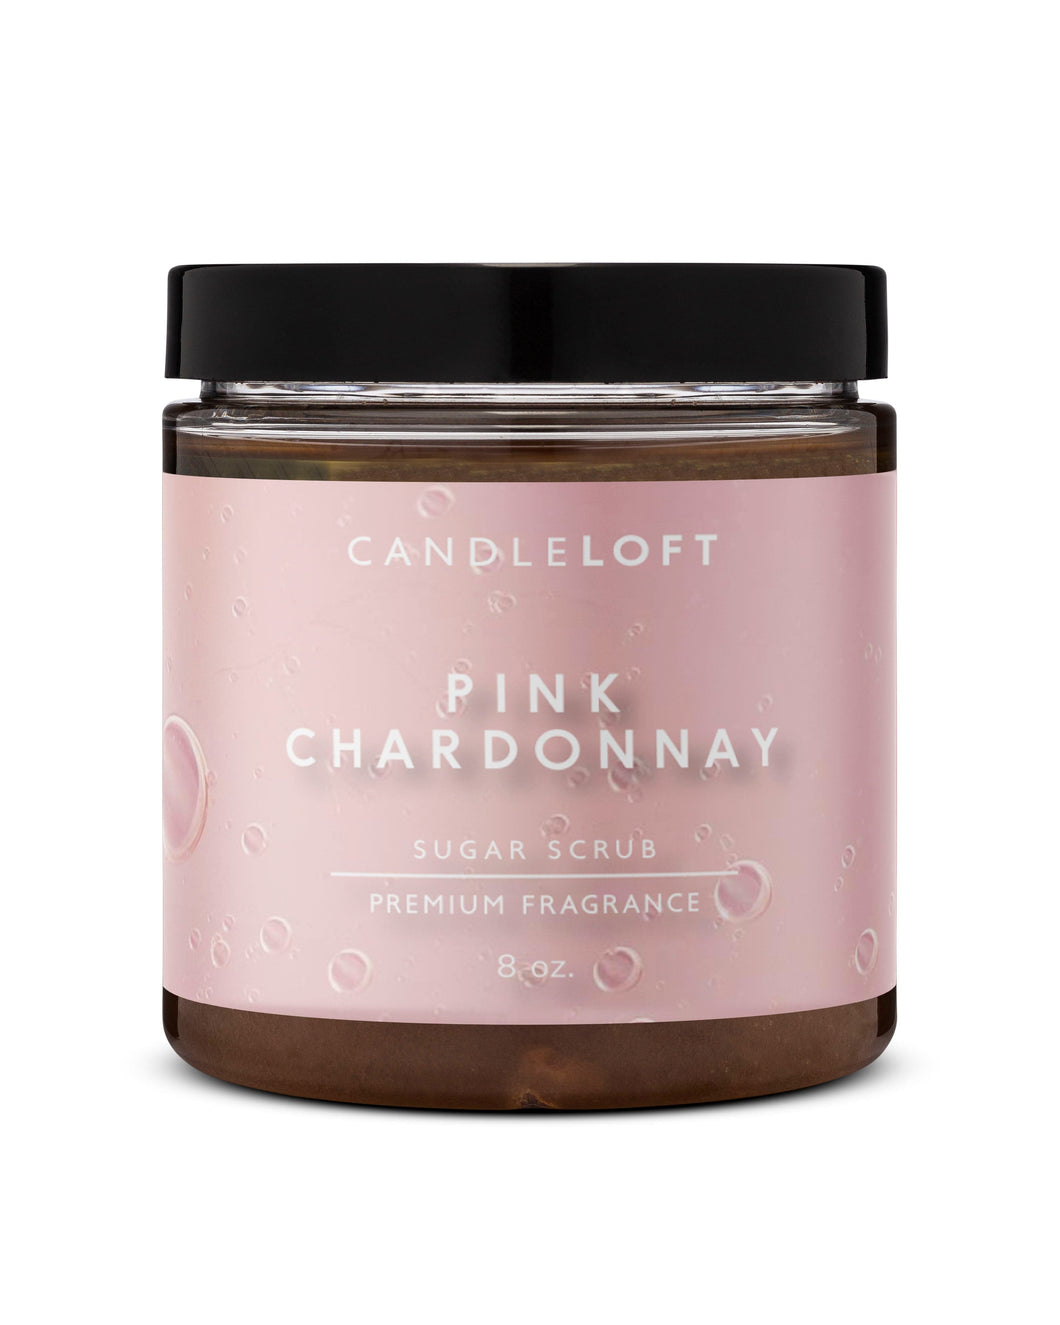 The Candle Loft Pink Chardonnay Sugar Scrub